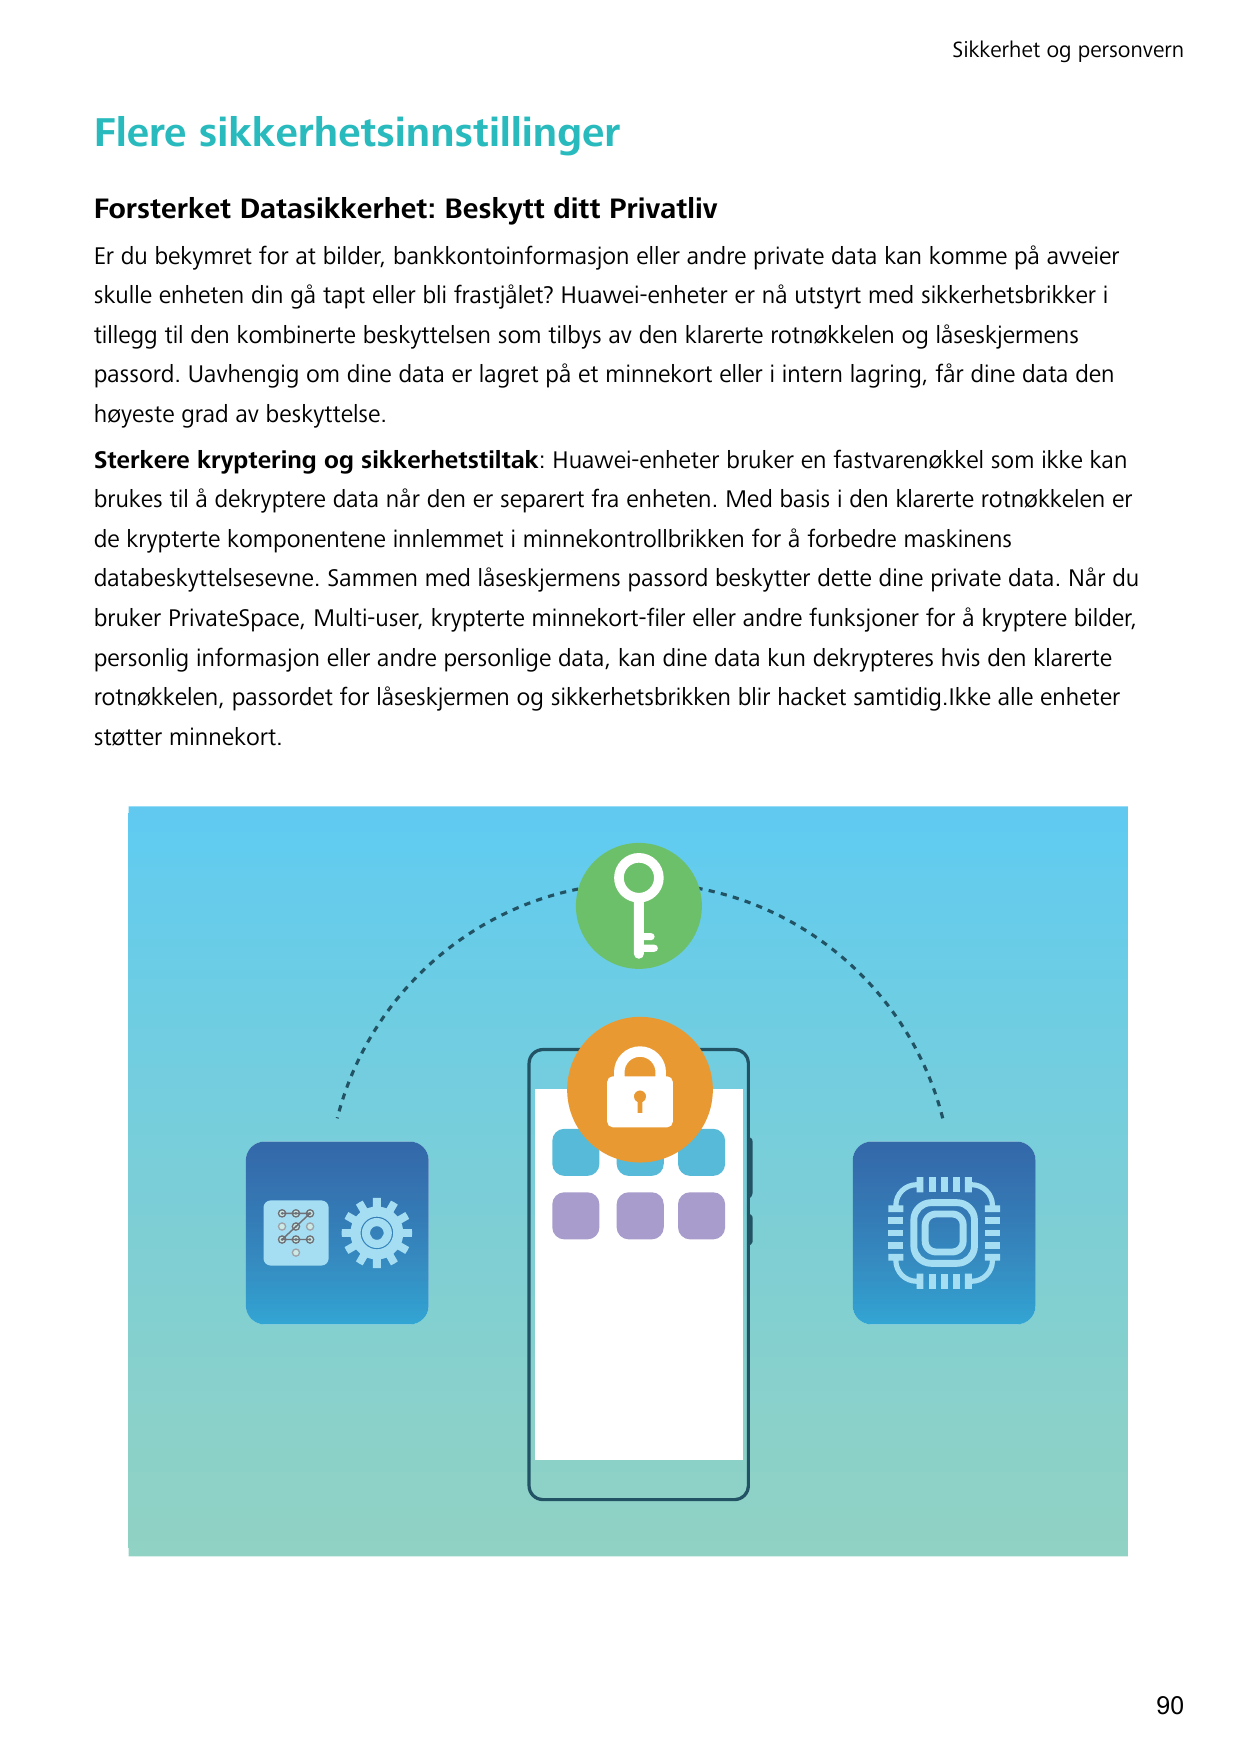 Sikkerhet og personvernFlere sikkerhetsinnstillingerForsterket Datasikkerhet: Beskytt ditt PrivatlivEr du bekymret for at bilder